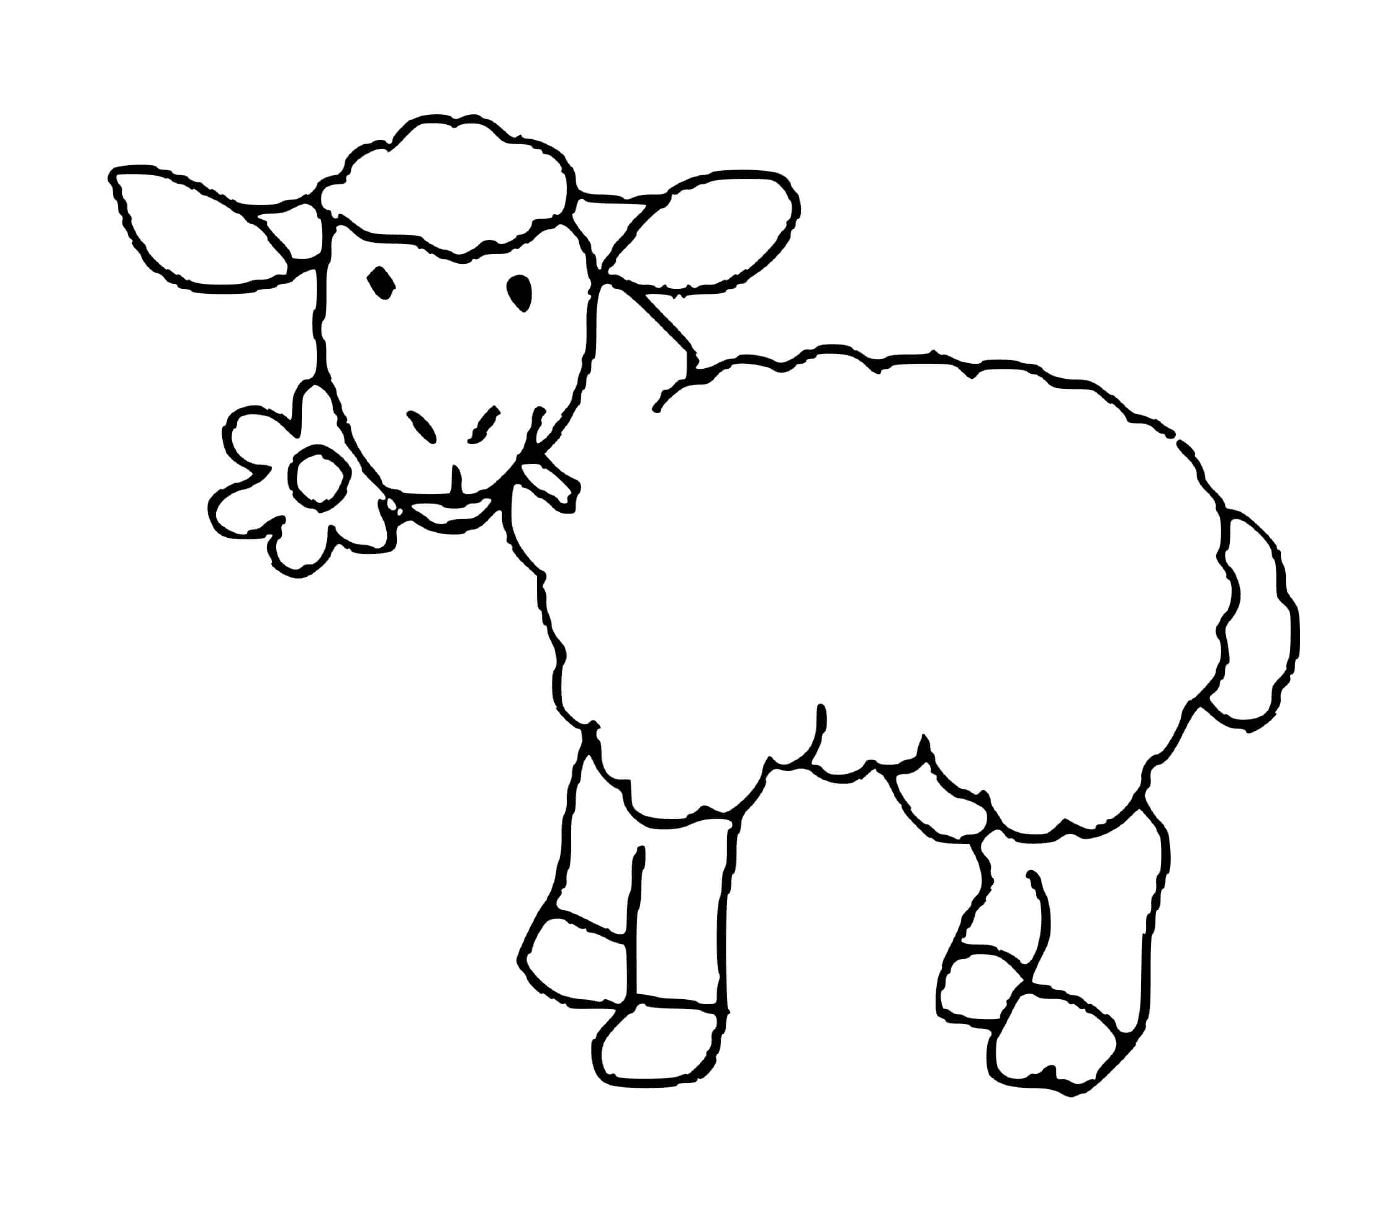  Mouton mangia delicatamente fiore 